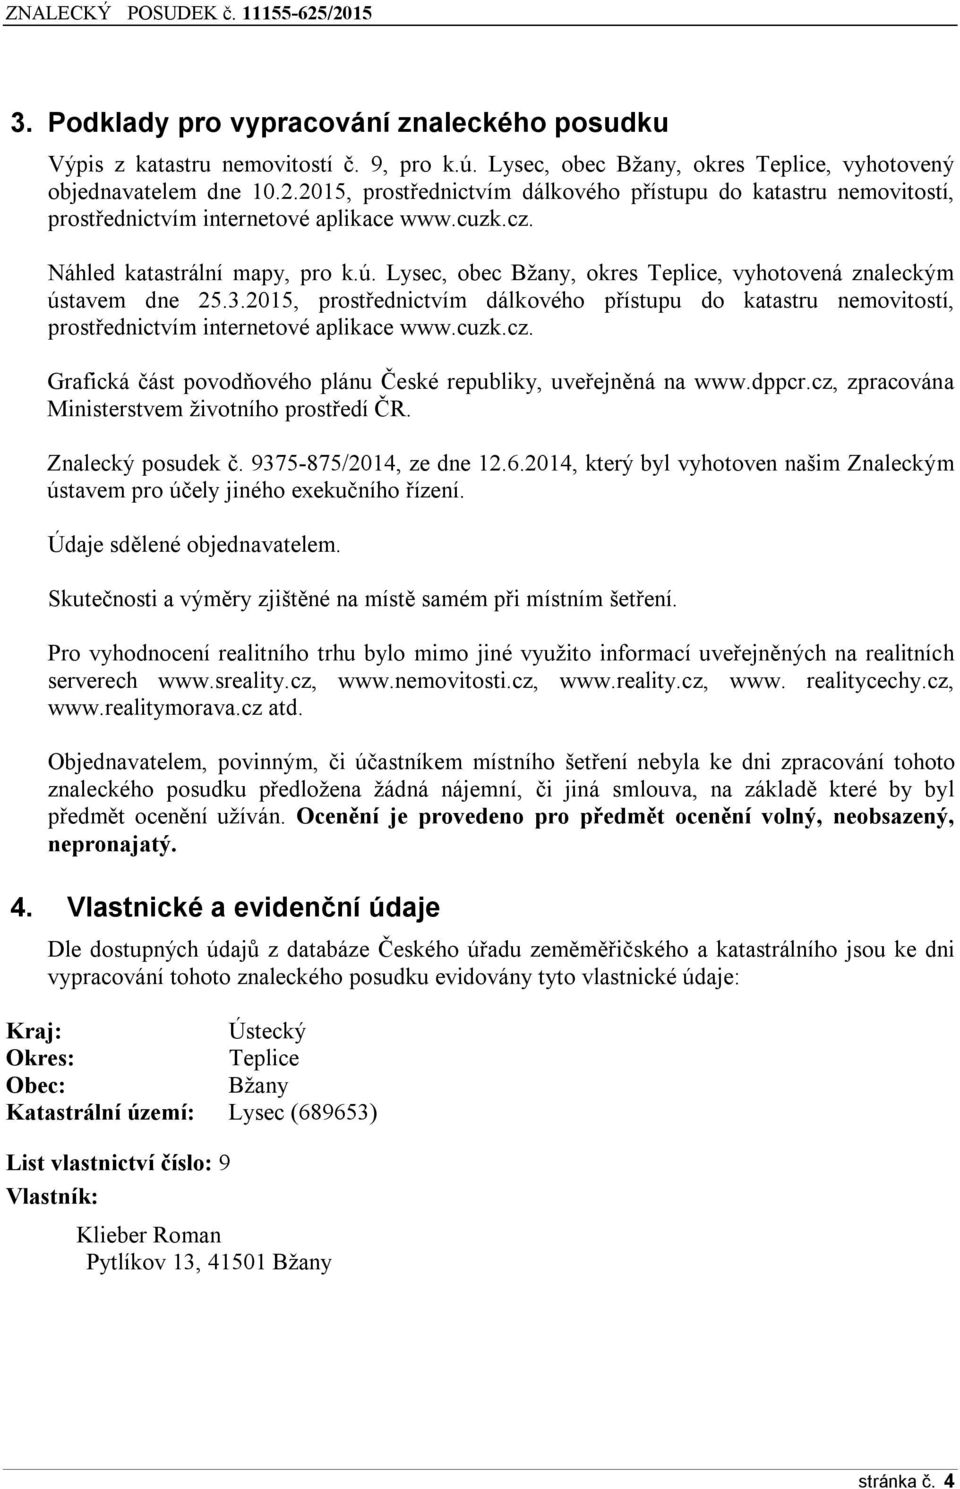 Lysec, obec Bžany, okres Teplice, vyhotovená znaleckým ústavem dne 25.3.2015, prostřednictvím dálkového přístupu do katastru nemovitostí, prostřednictvím internetové aplikace www.cuzk.cz.